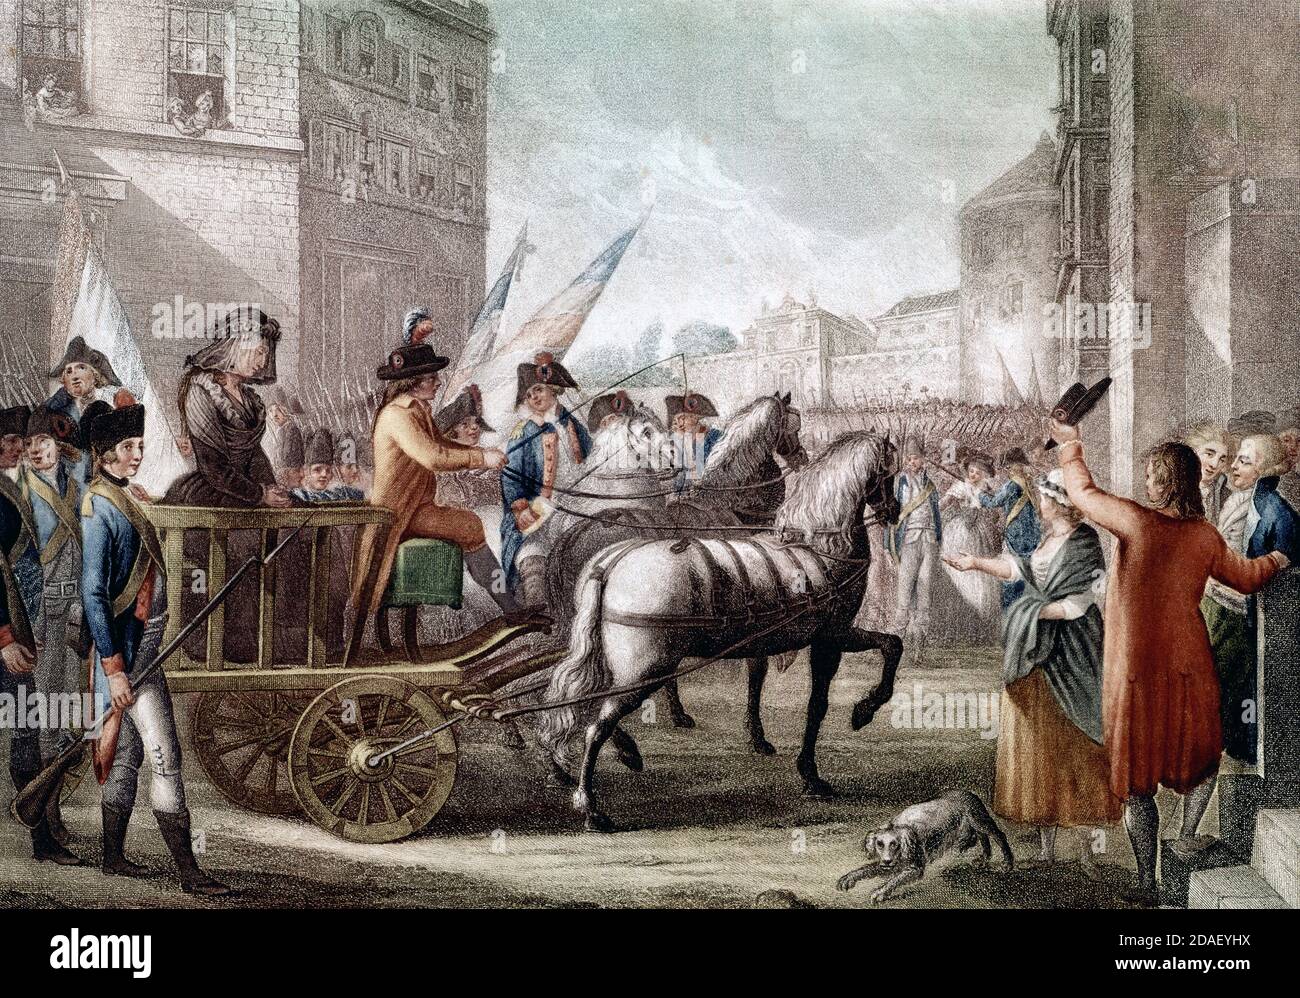 Königin Marie Antoinette wird zur Guillotine geführt, 16. Oktober 1793 - La reine Marie-Antoinette étant conduite à la Guillotine, le 16 octobre 1793 Stockfoto